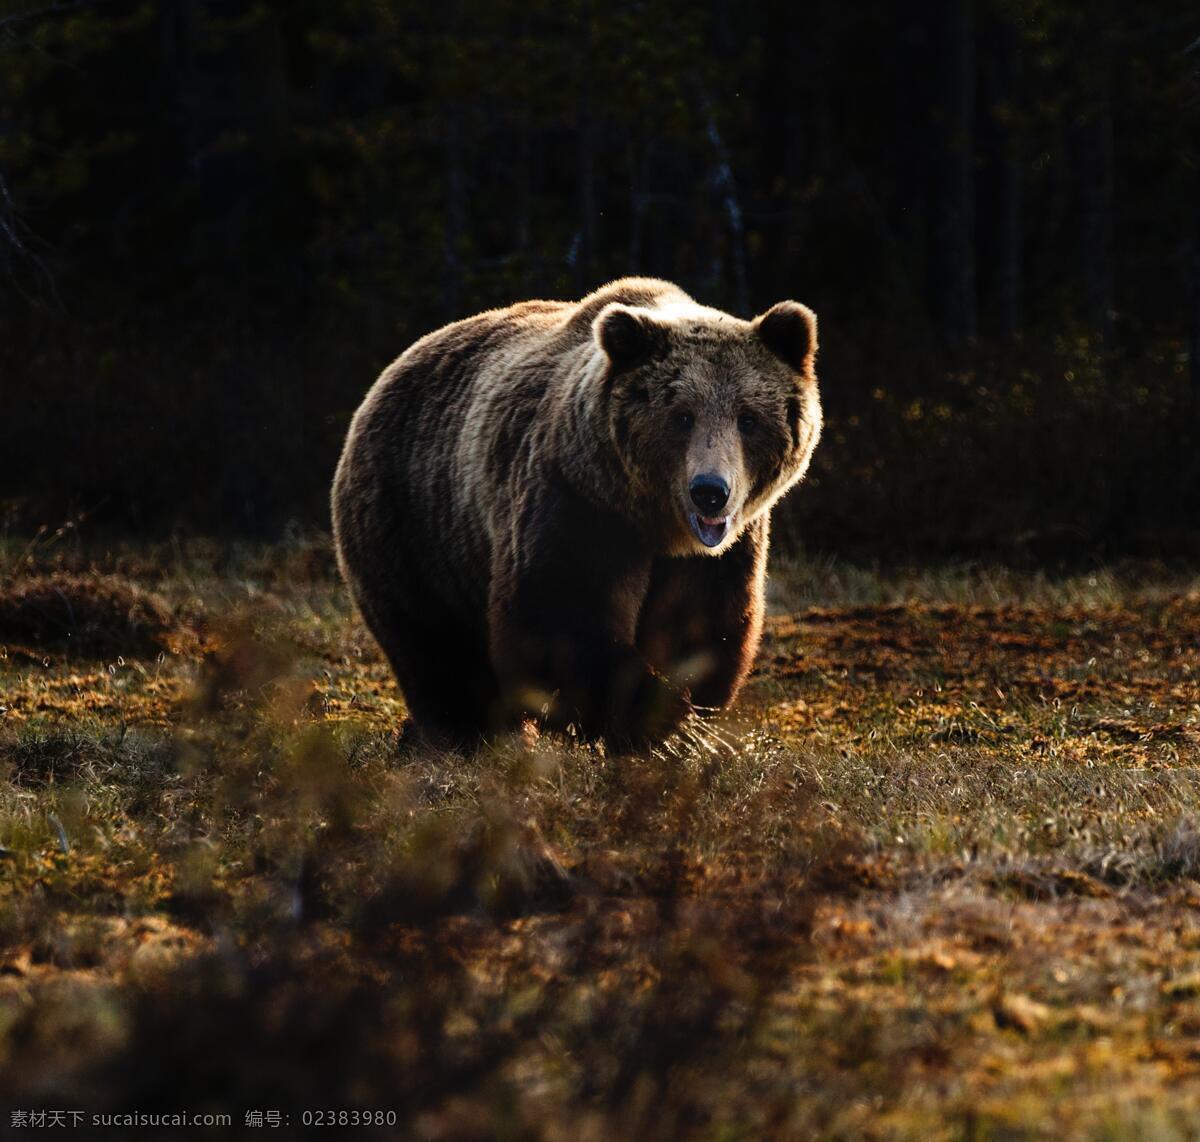 一直 在野 外 寻觅 熊 灰熊 狗熊 野生动物 野外 动物世界 凝视 正面照 生物世界